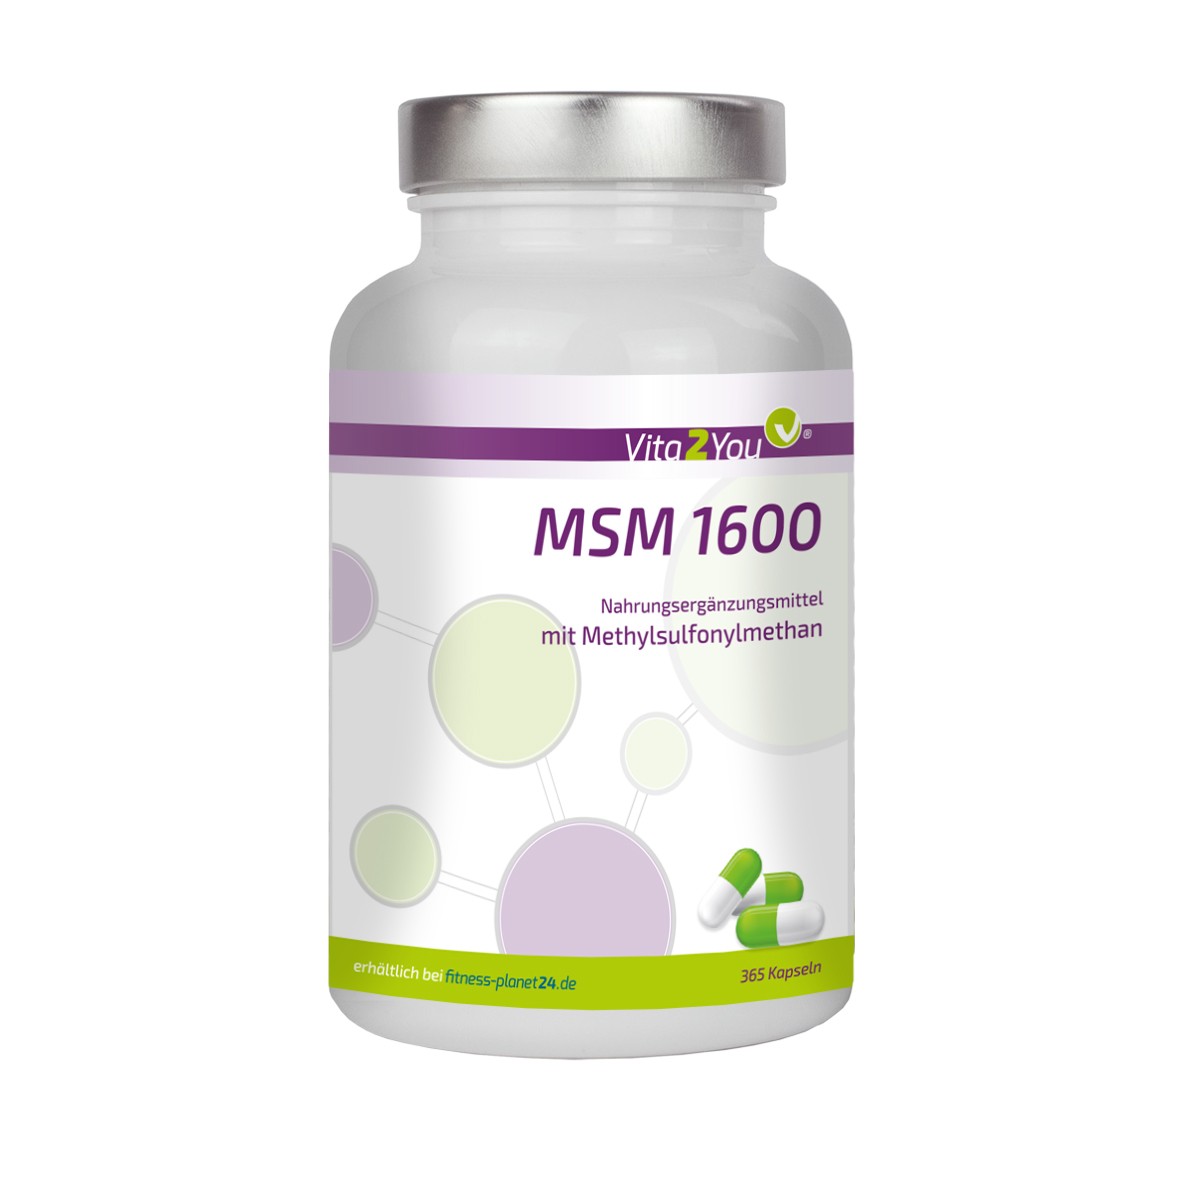 Vita2You MSM 1600 - 365 Kapseln - 800mg pro Kapsel - (Methylsulfonylmethan) -... von vita2you